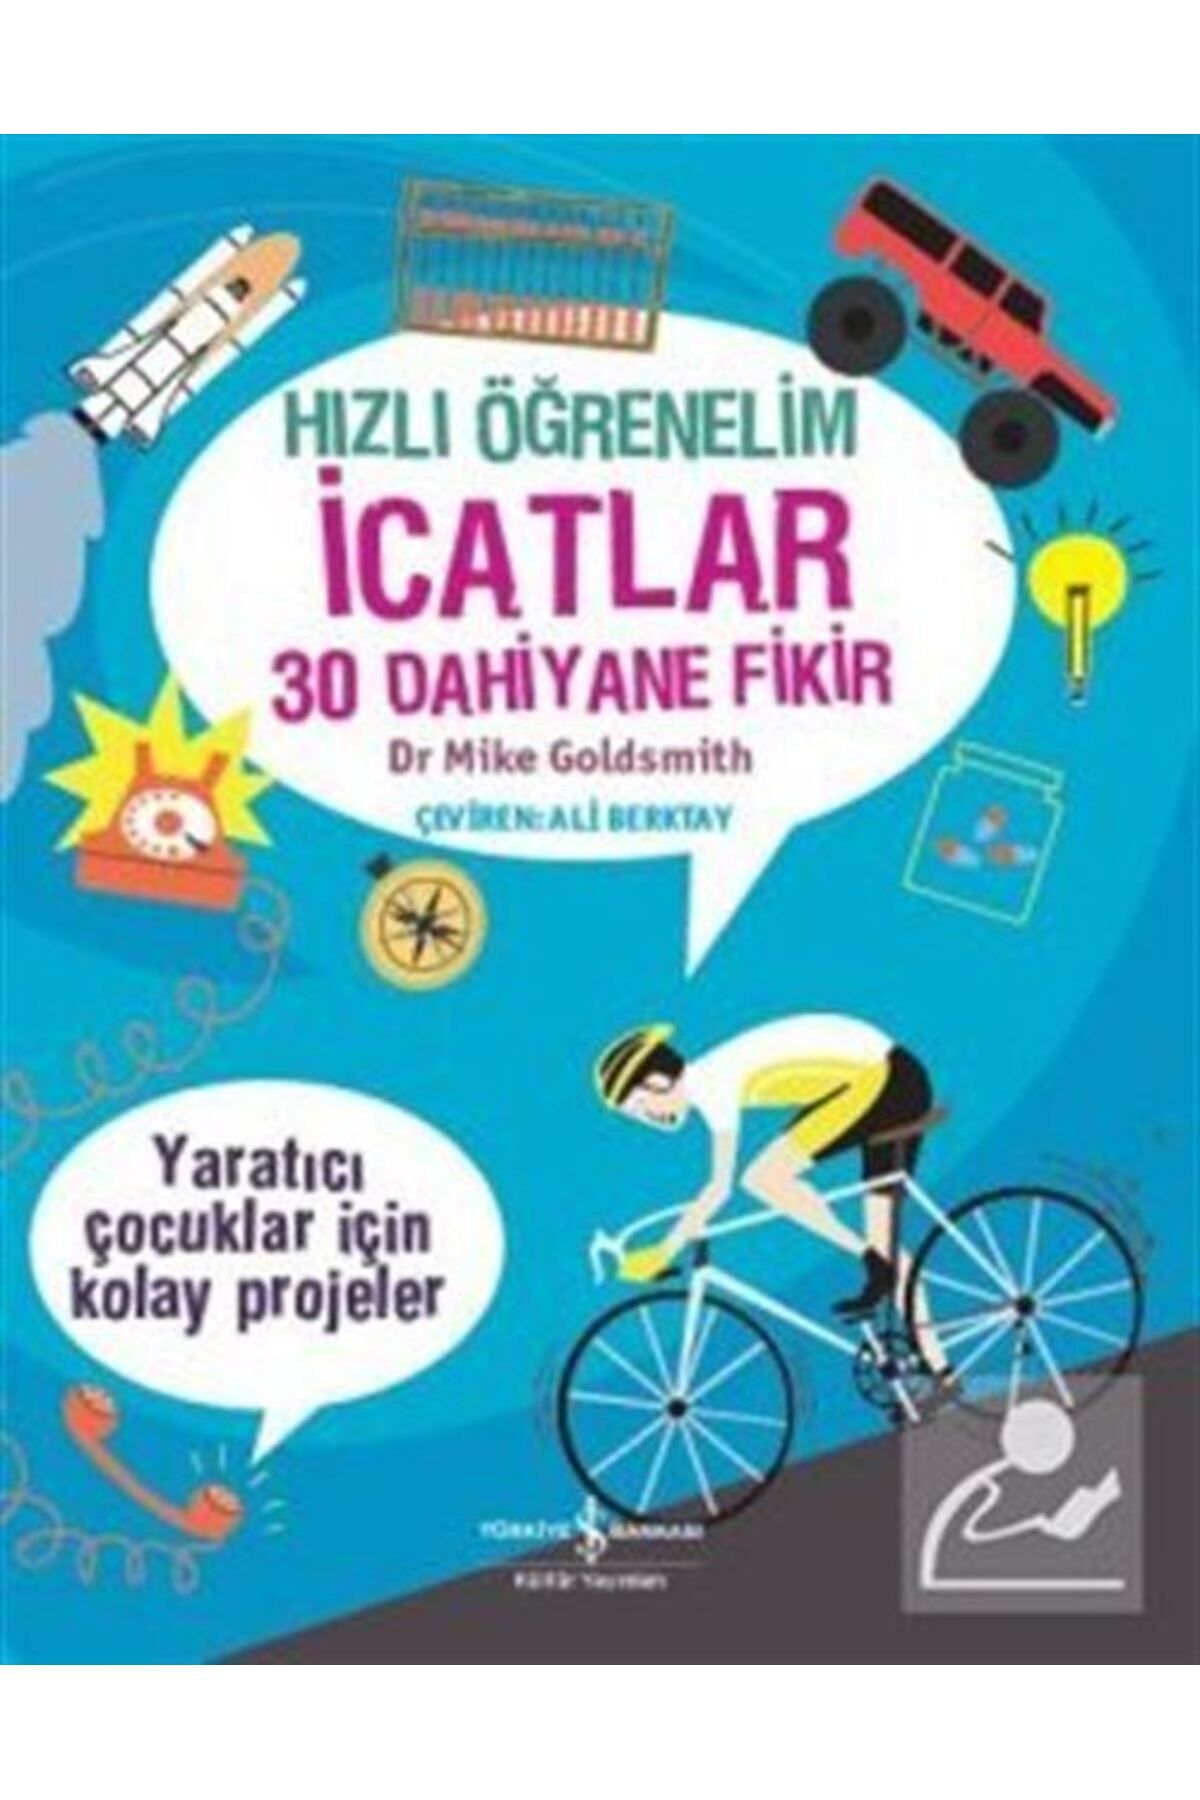 Türkiye İş Bankası Kültür Yayınları Hızlı Öğrenelim Icatlar 30 Dahiyane Fikir